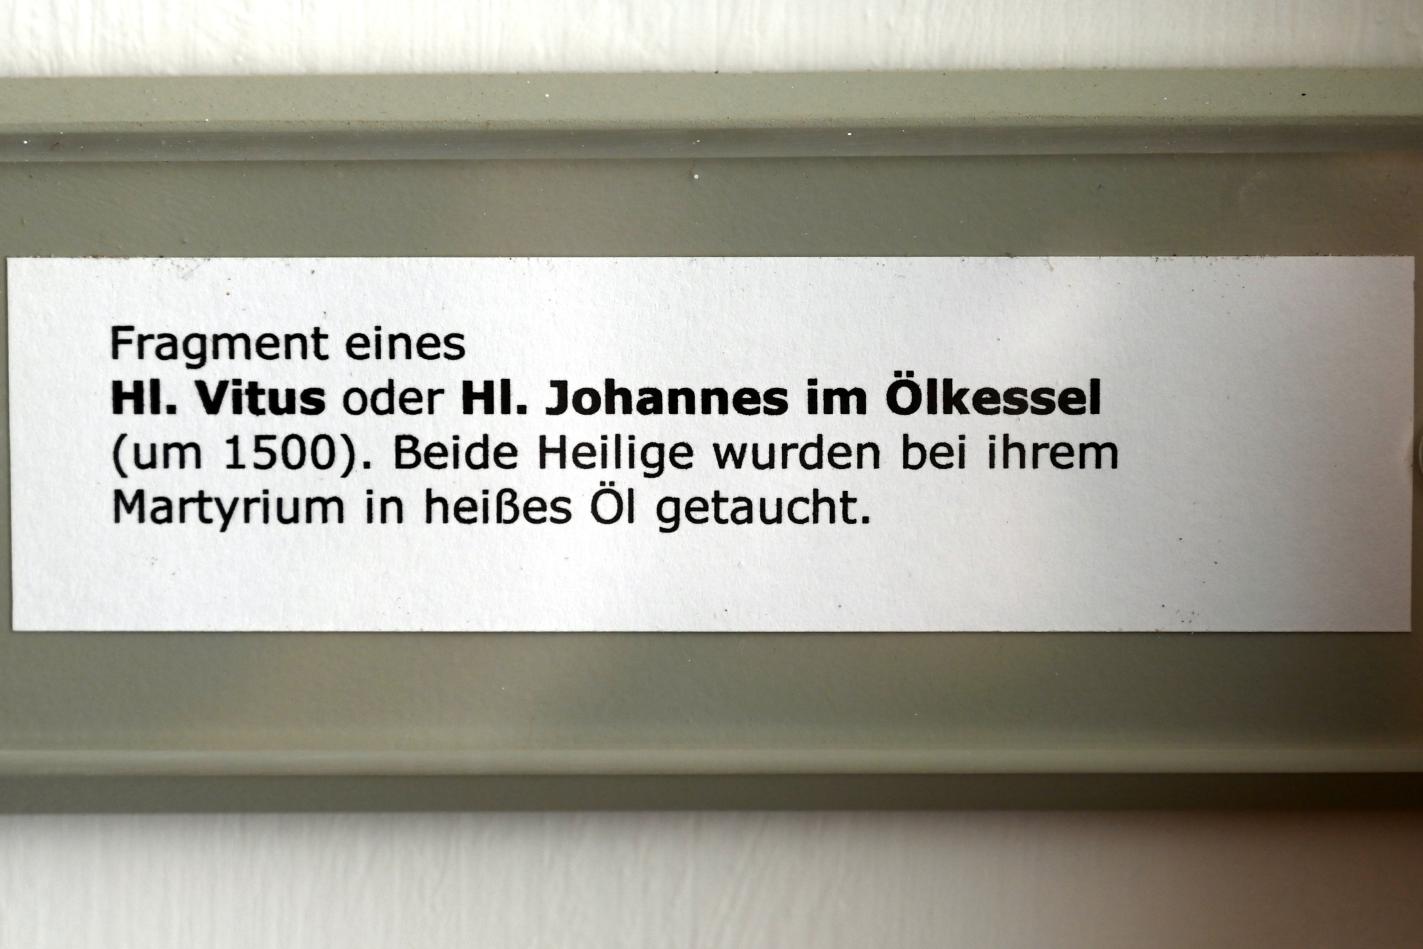 Fragment eines Hl. Vitus oder Hl. Johannes im Ölkessel, Überlingen, Städtisches Museum, Gotisches Zimmer, um 1500, Bild 2/2